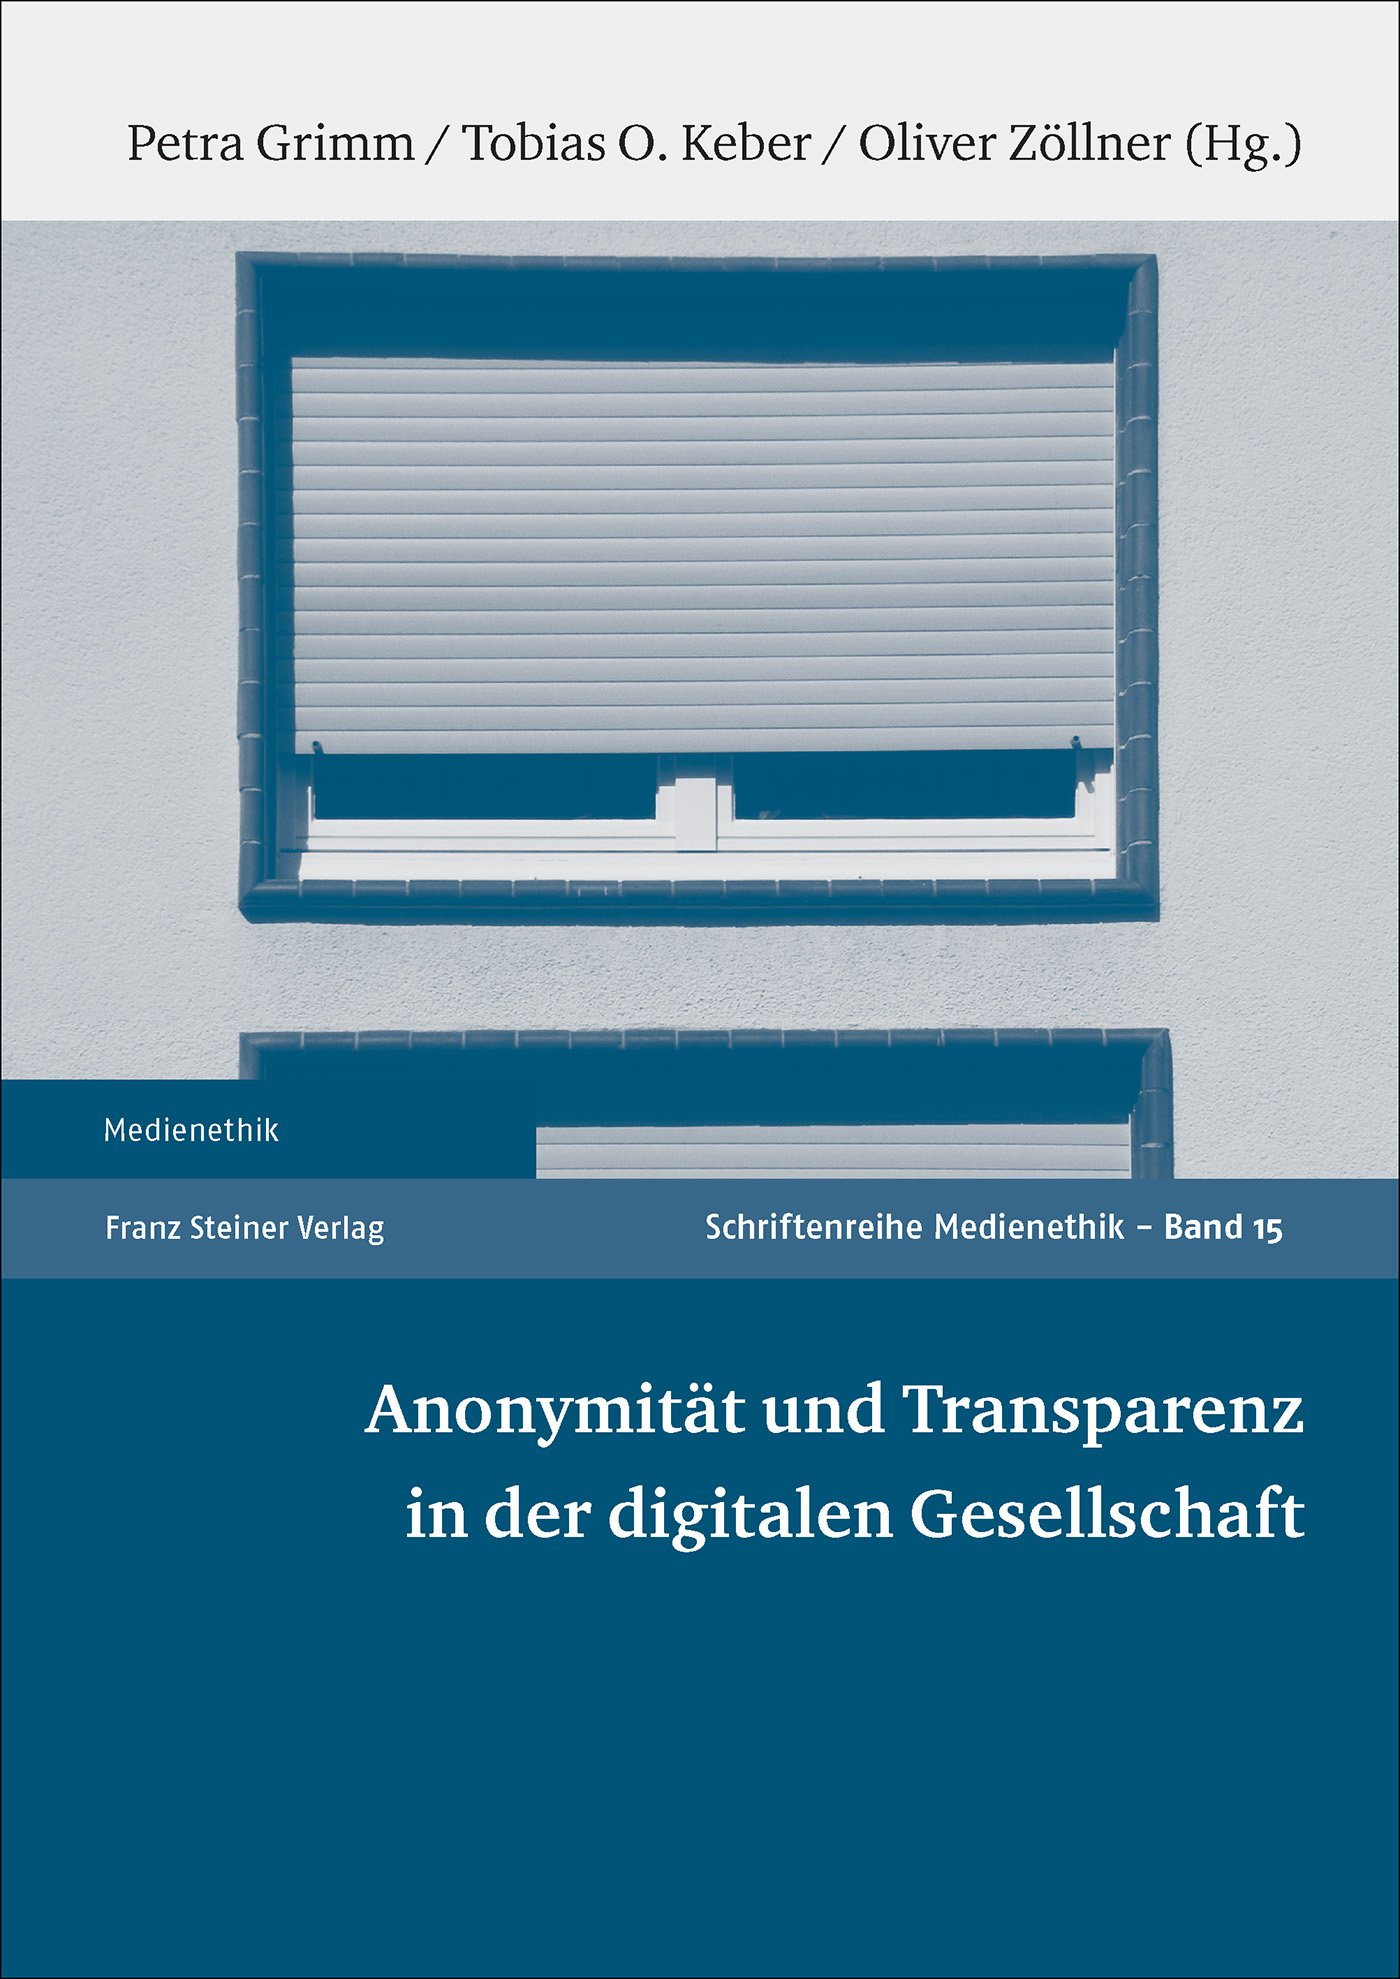 Anonymität und Transparenz in der digitalen Gesellschaft